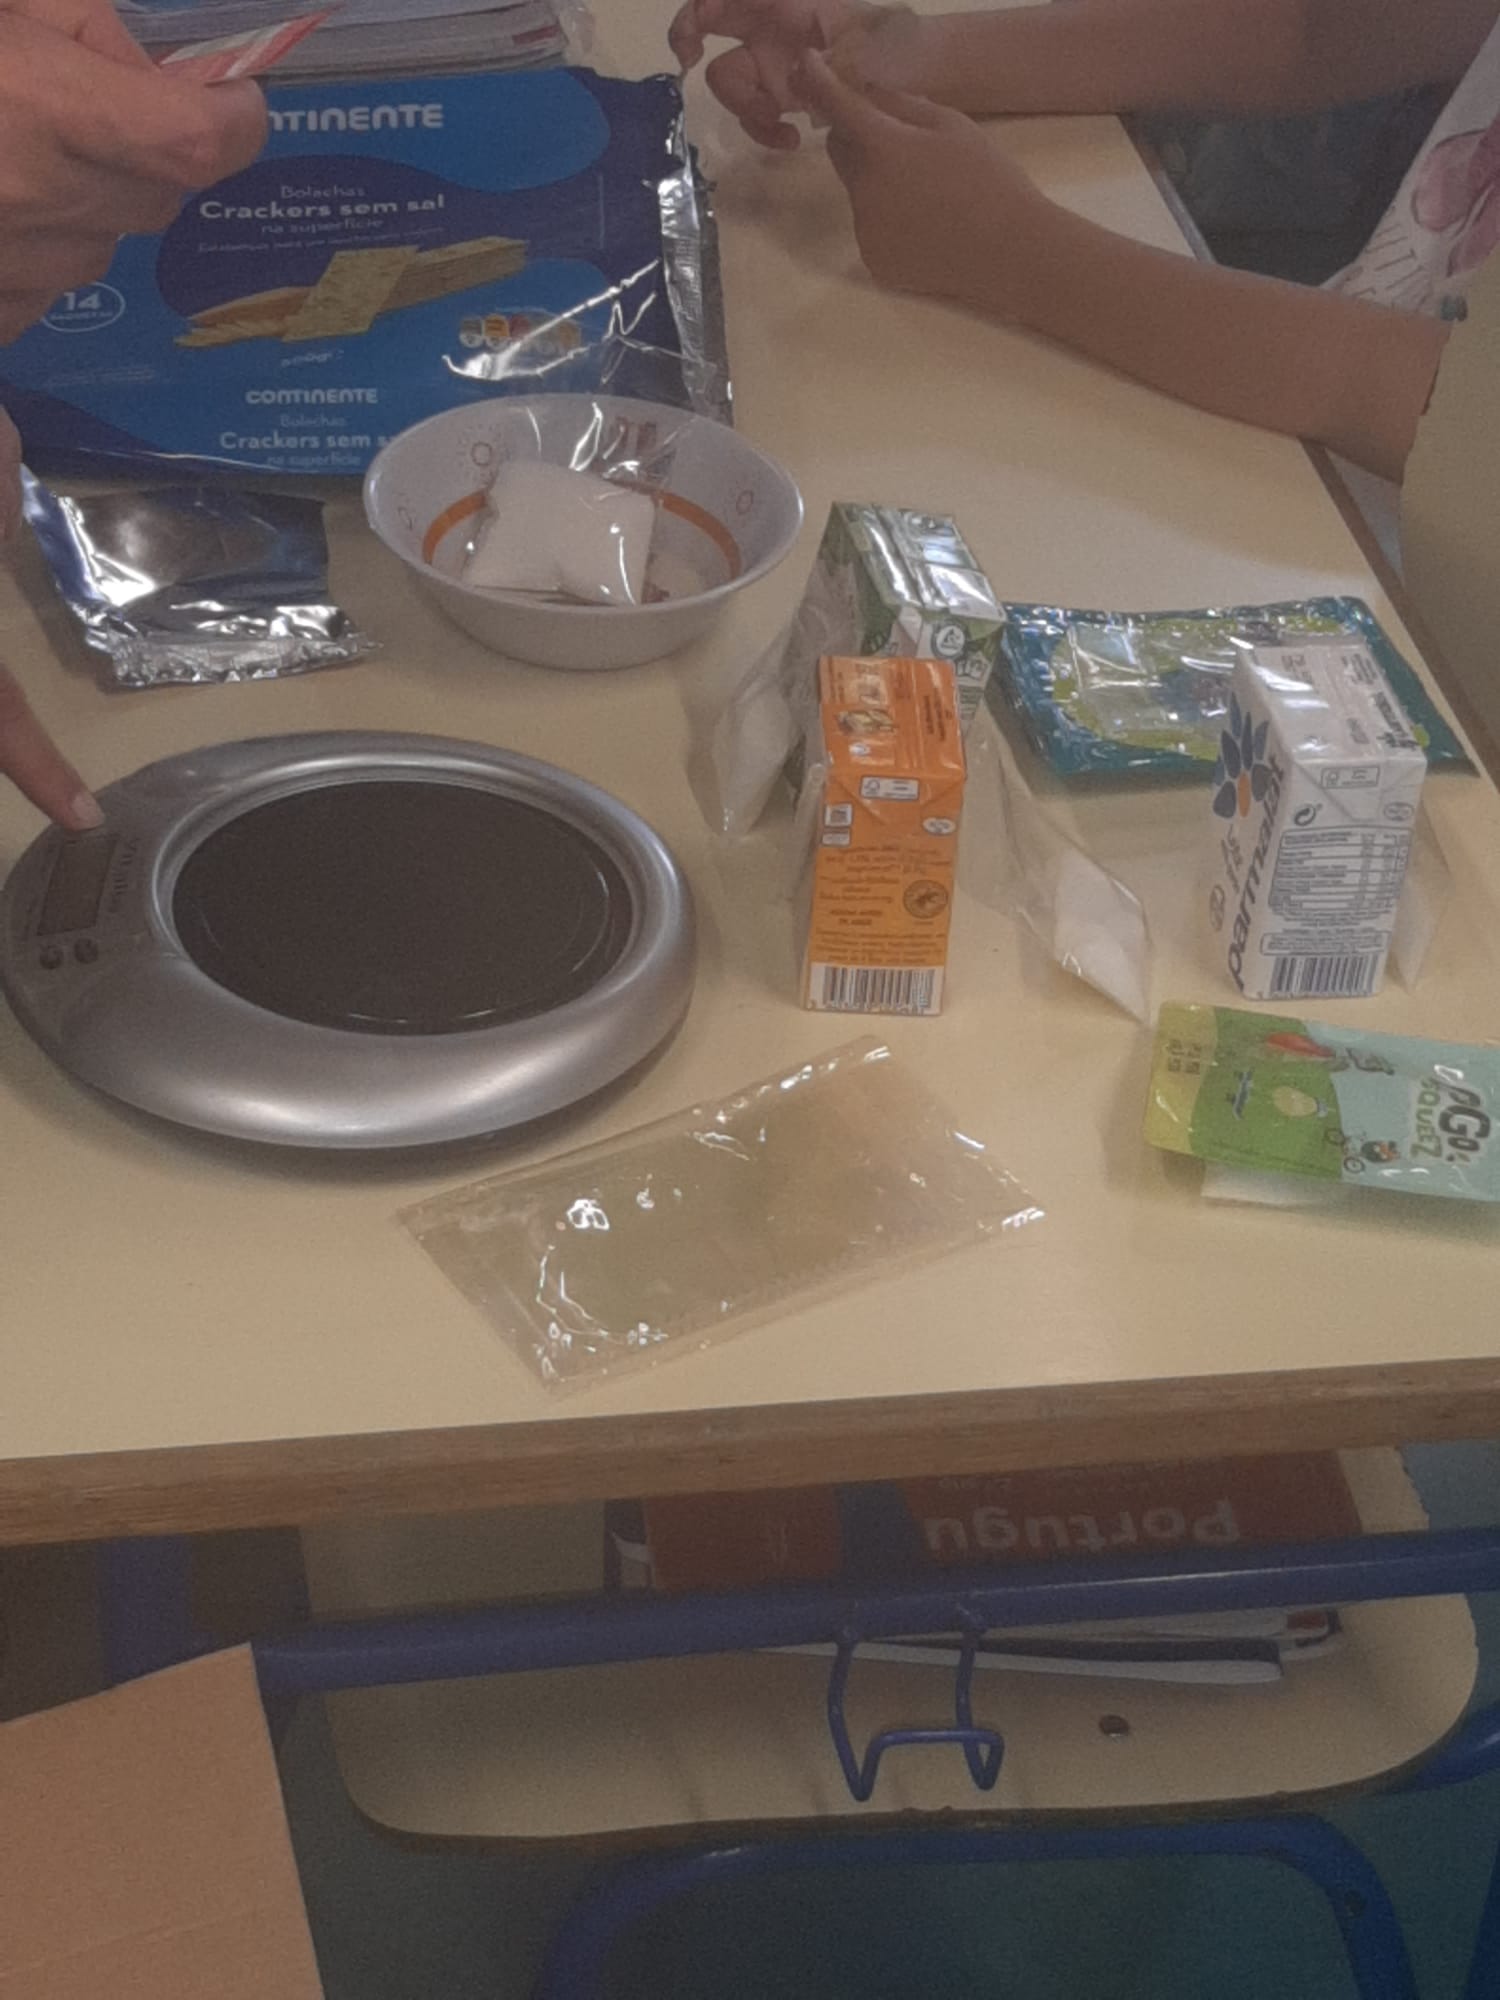 Os alimentos selecionados foram analisados e fez-se a pesagem das quantidades de açúcar presentes em cada um deles, pelos alunos, mas com apoio da professora da turma.